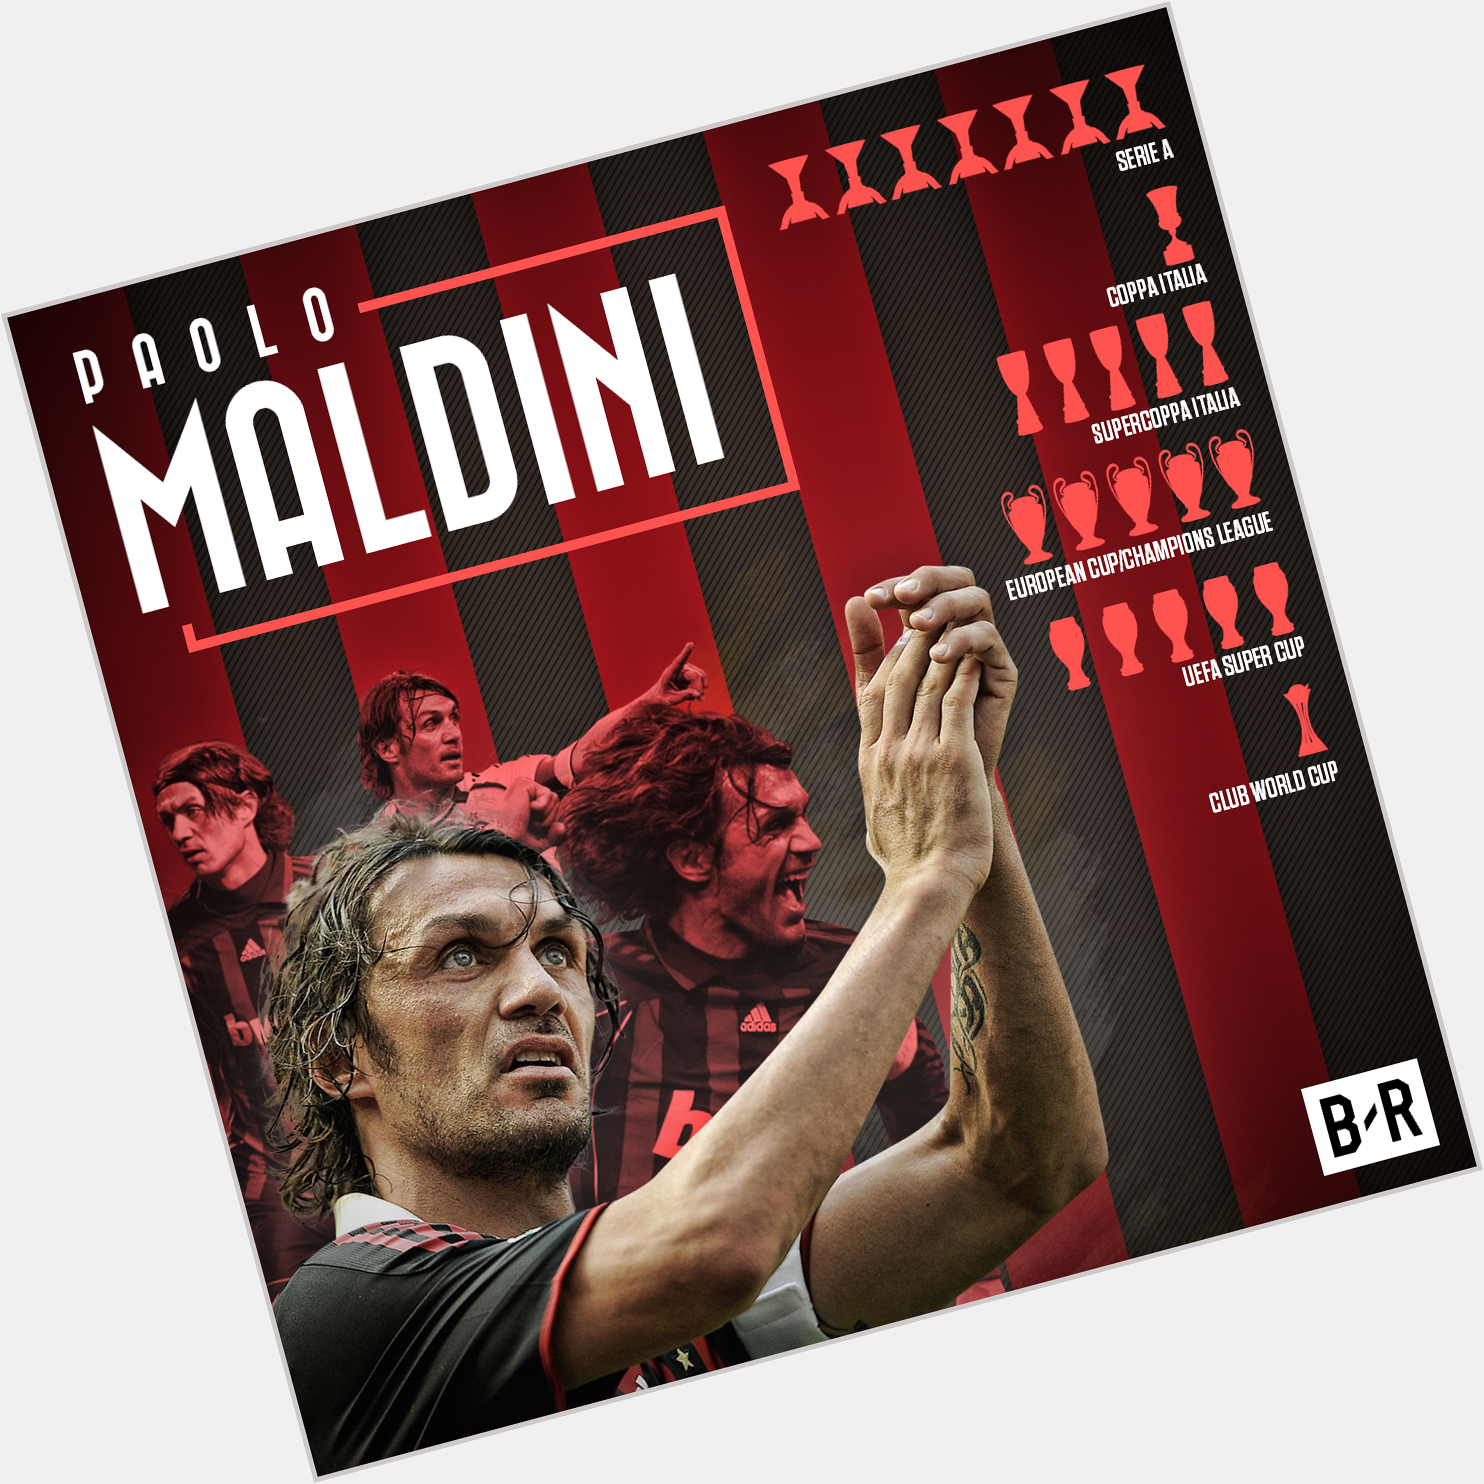 Happy 49th birthday, Paolo Maldini AC Milan legend   902 appearances
24 seasons
1 club 